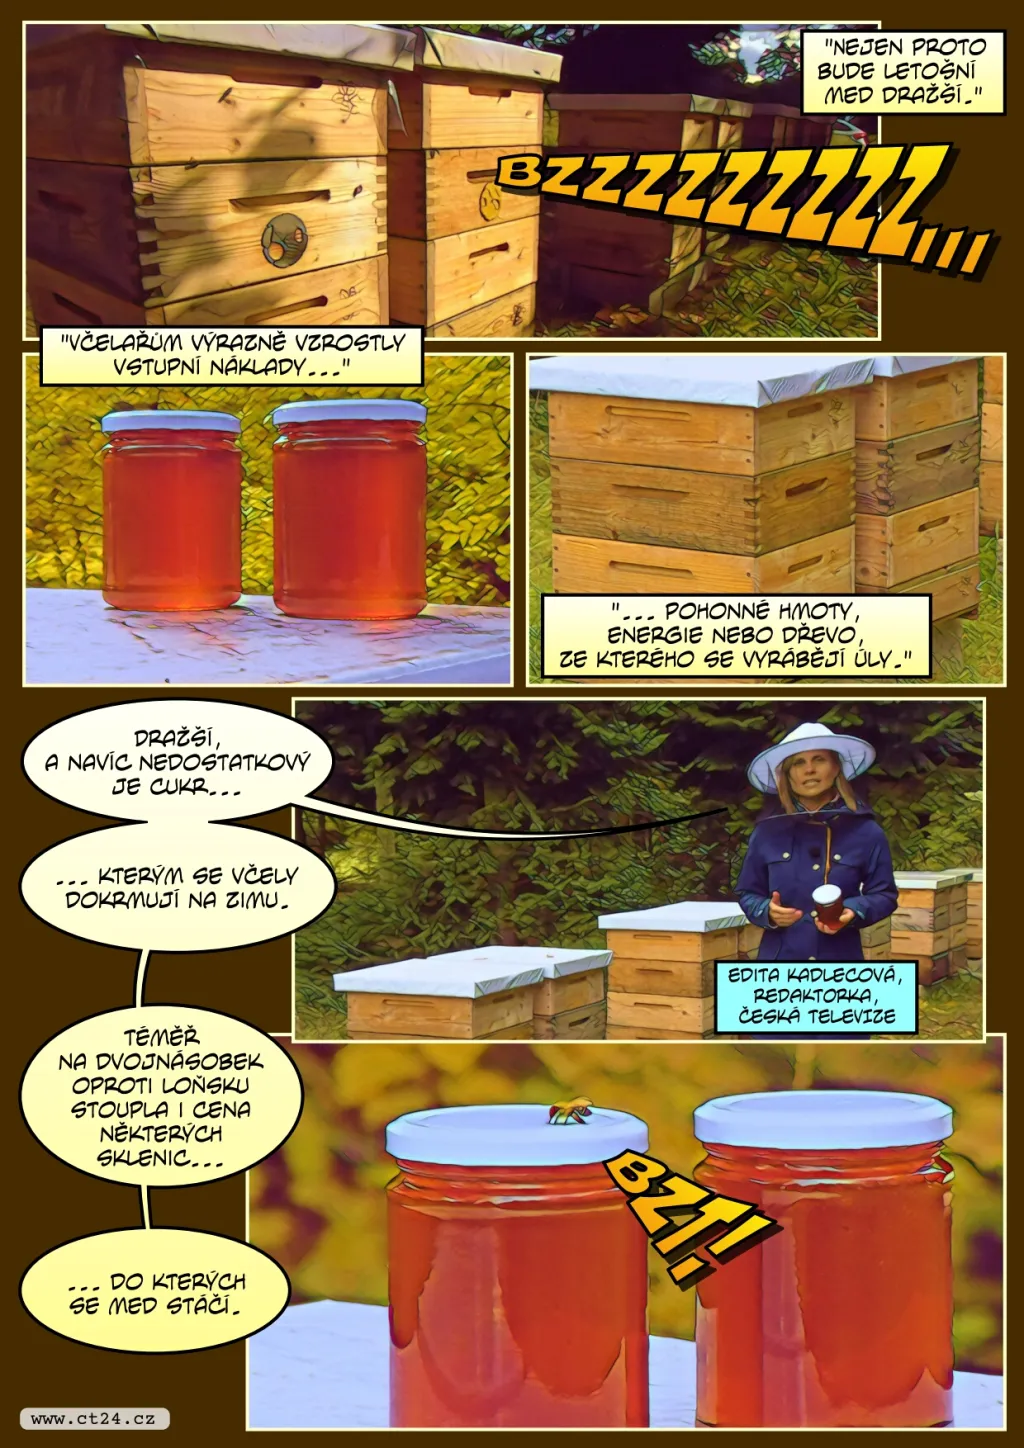 Včelstva mají málo medu